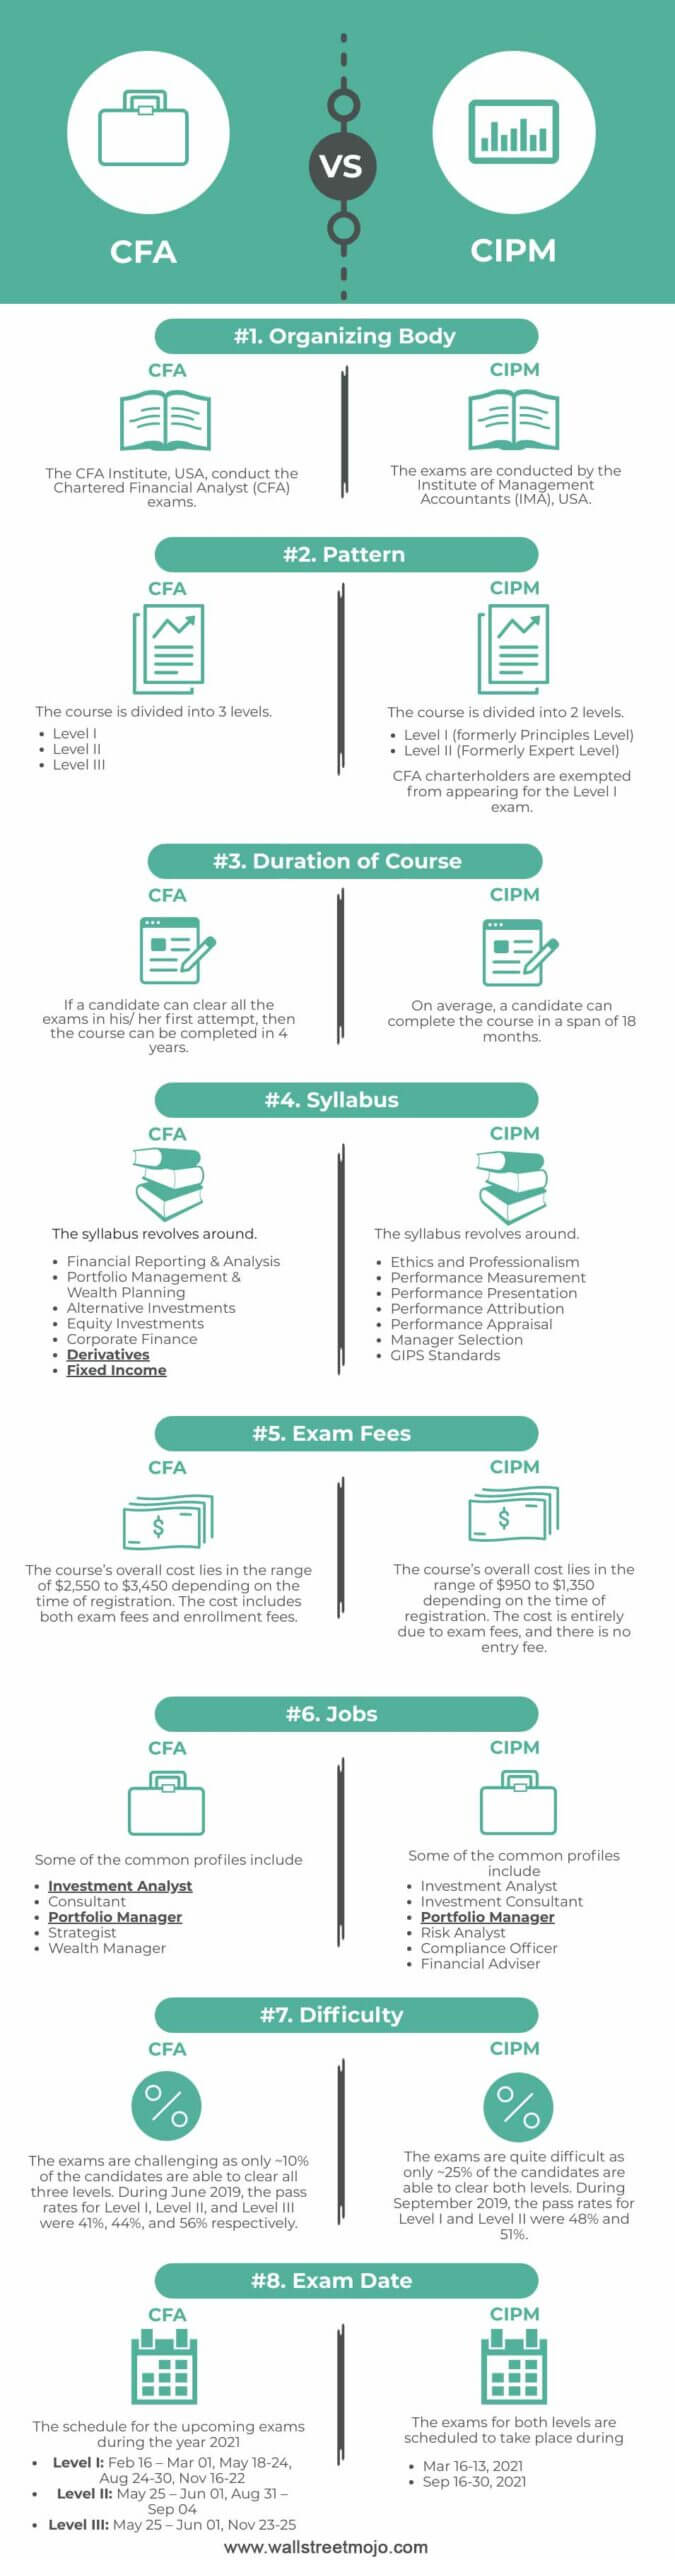 CFA-vs-CIPM-info